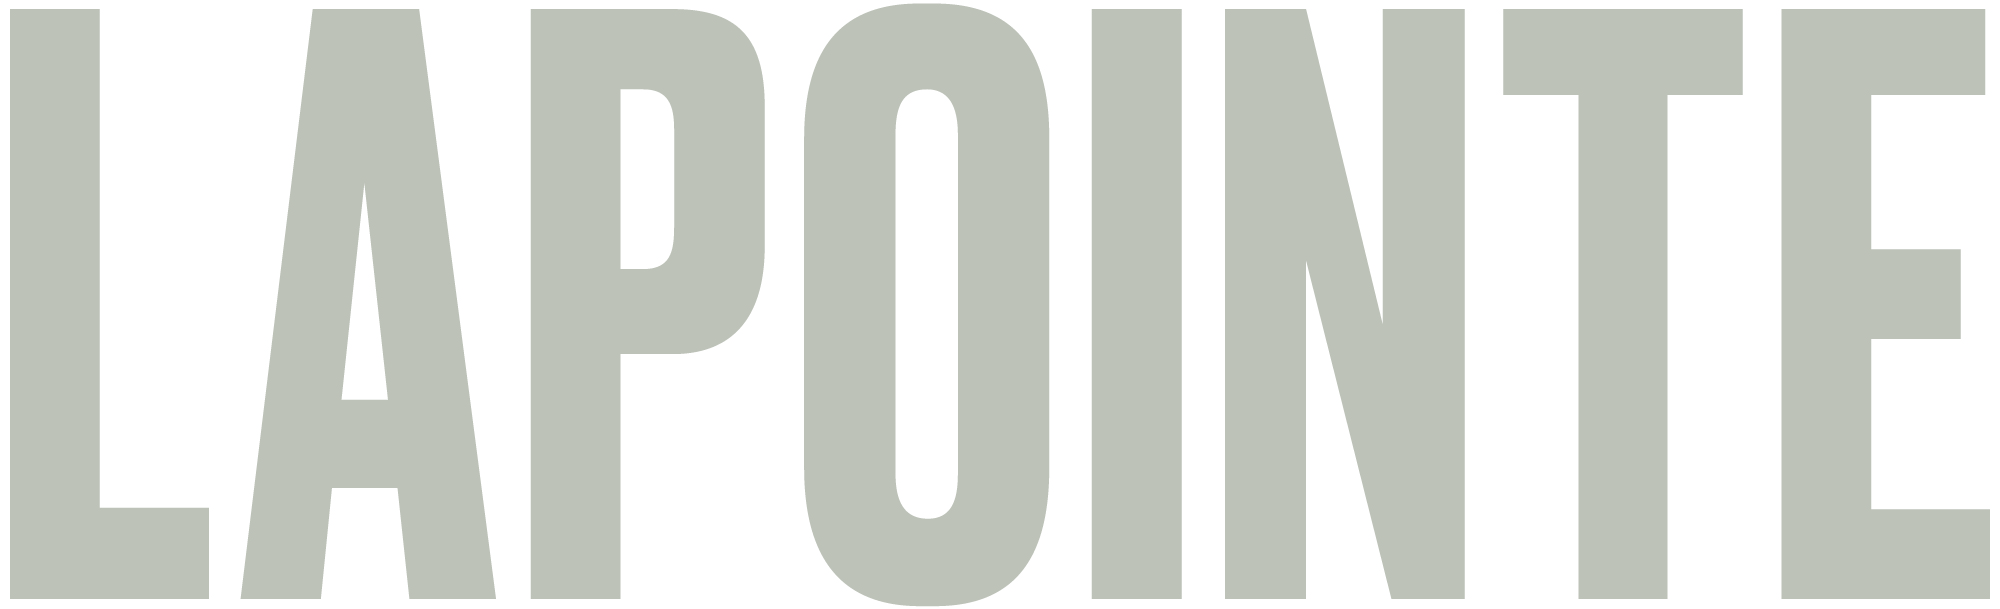 LAPOINTE_logo